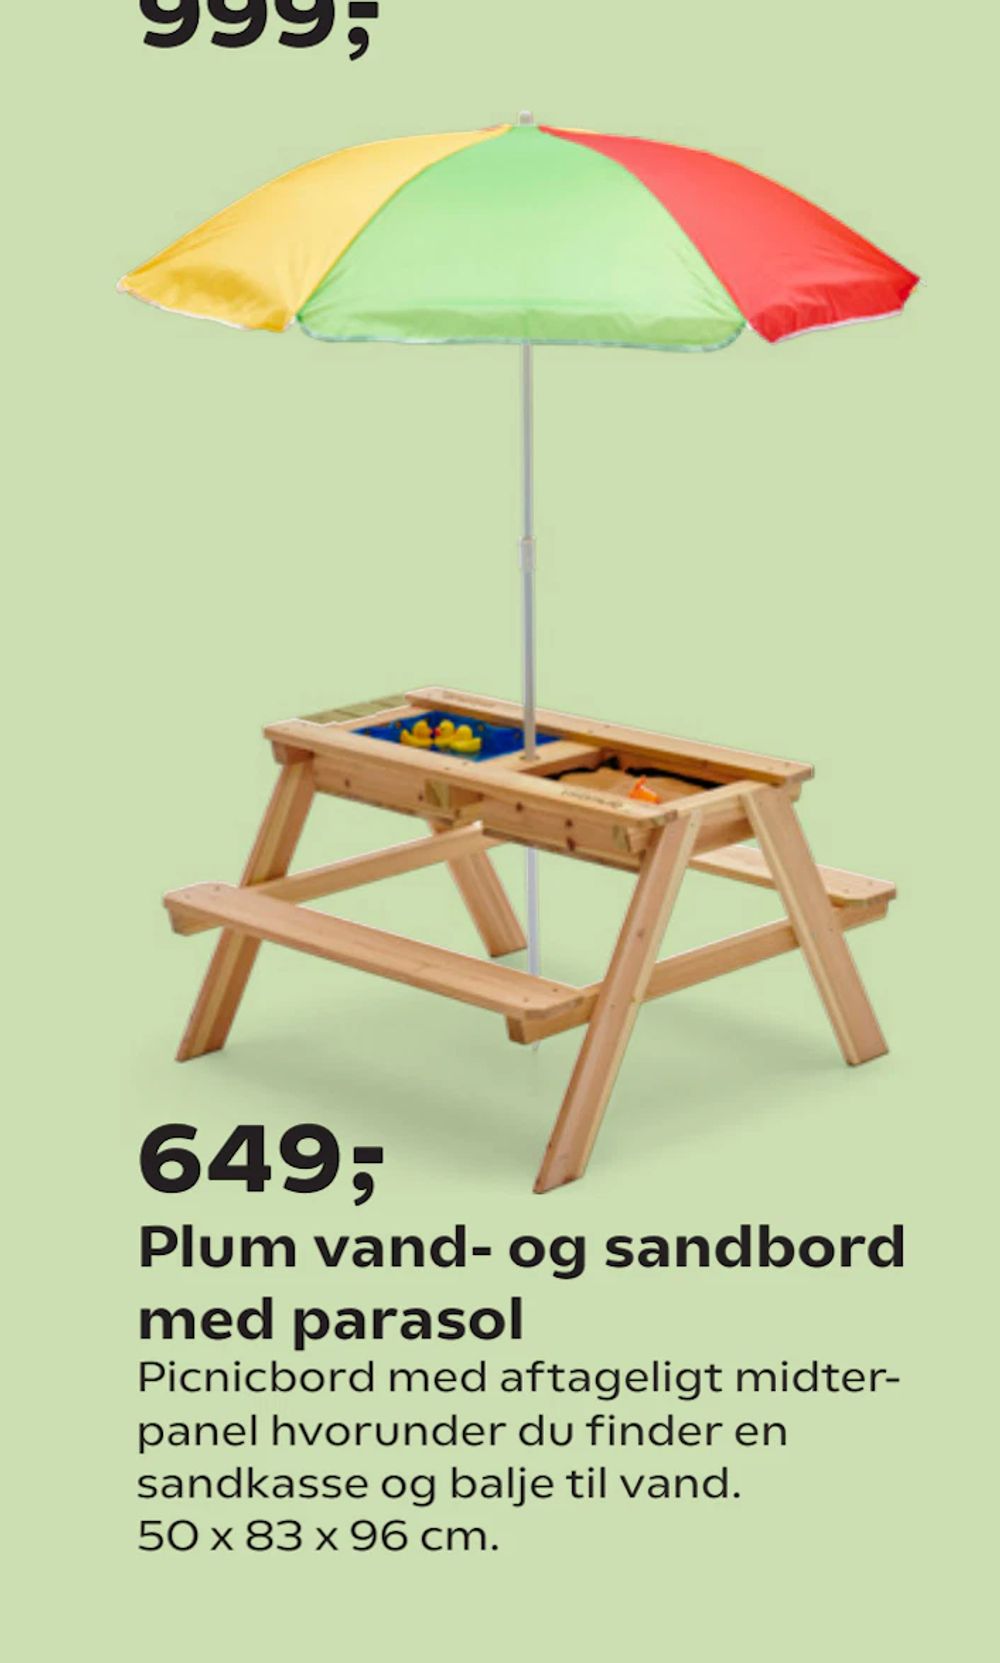 Tilbud på Plum vand- og sandbord med parasol fra Coop.dk til 649 kr.